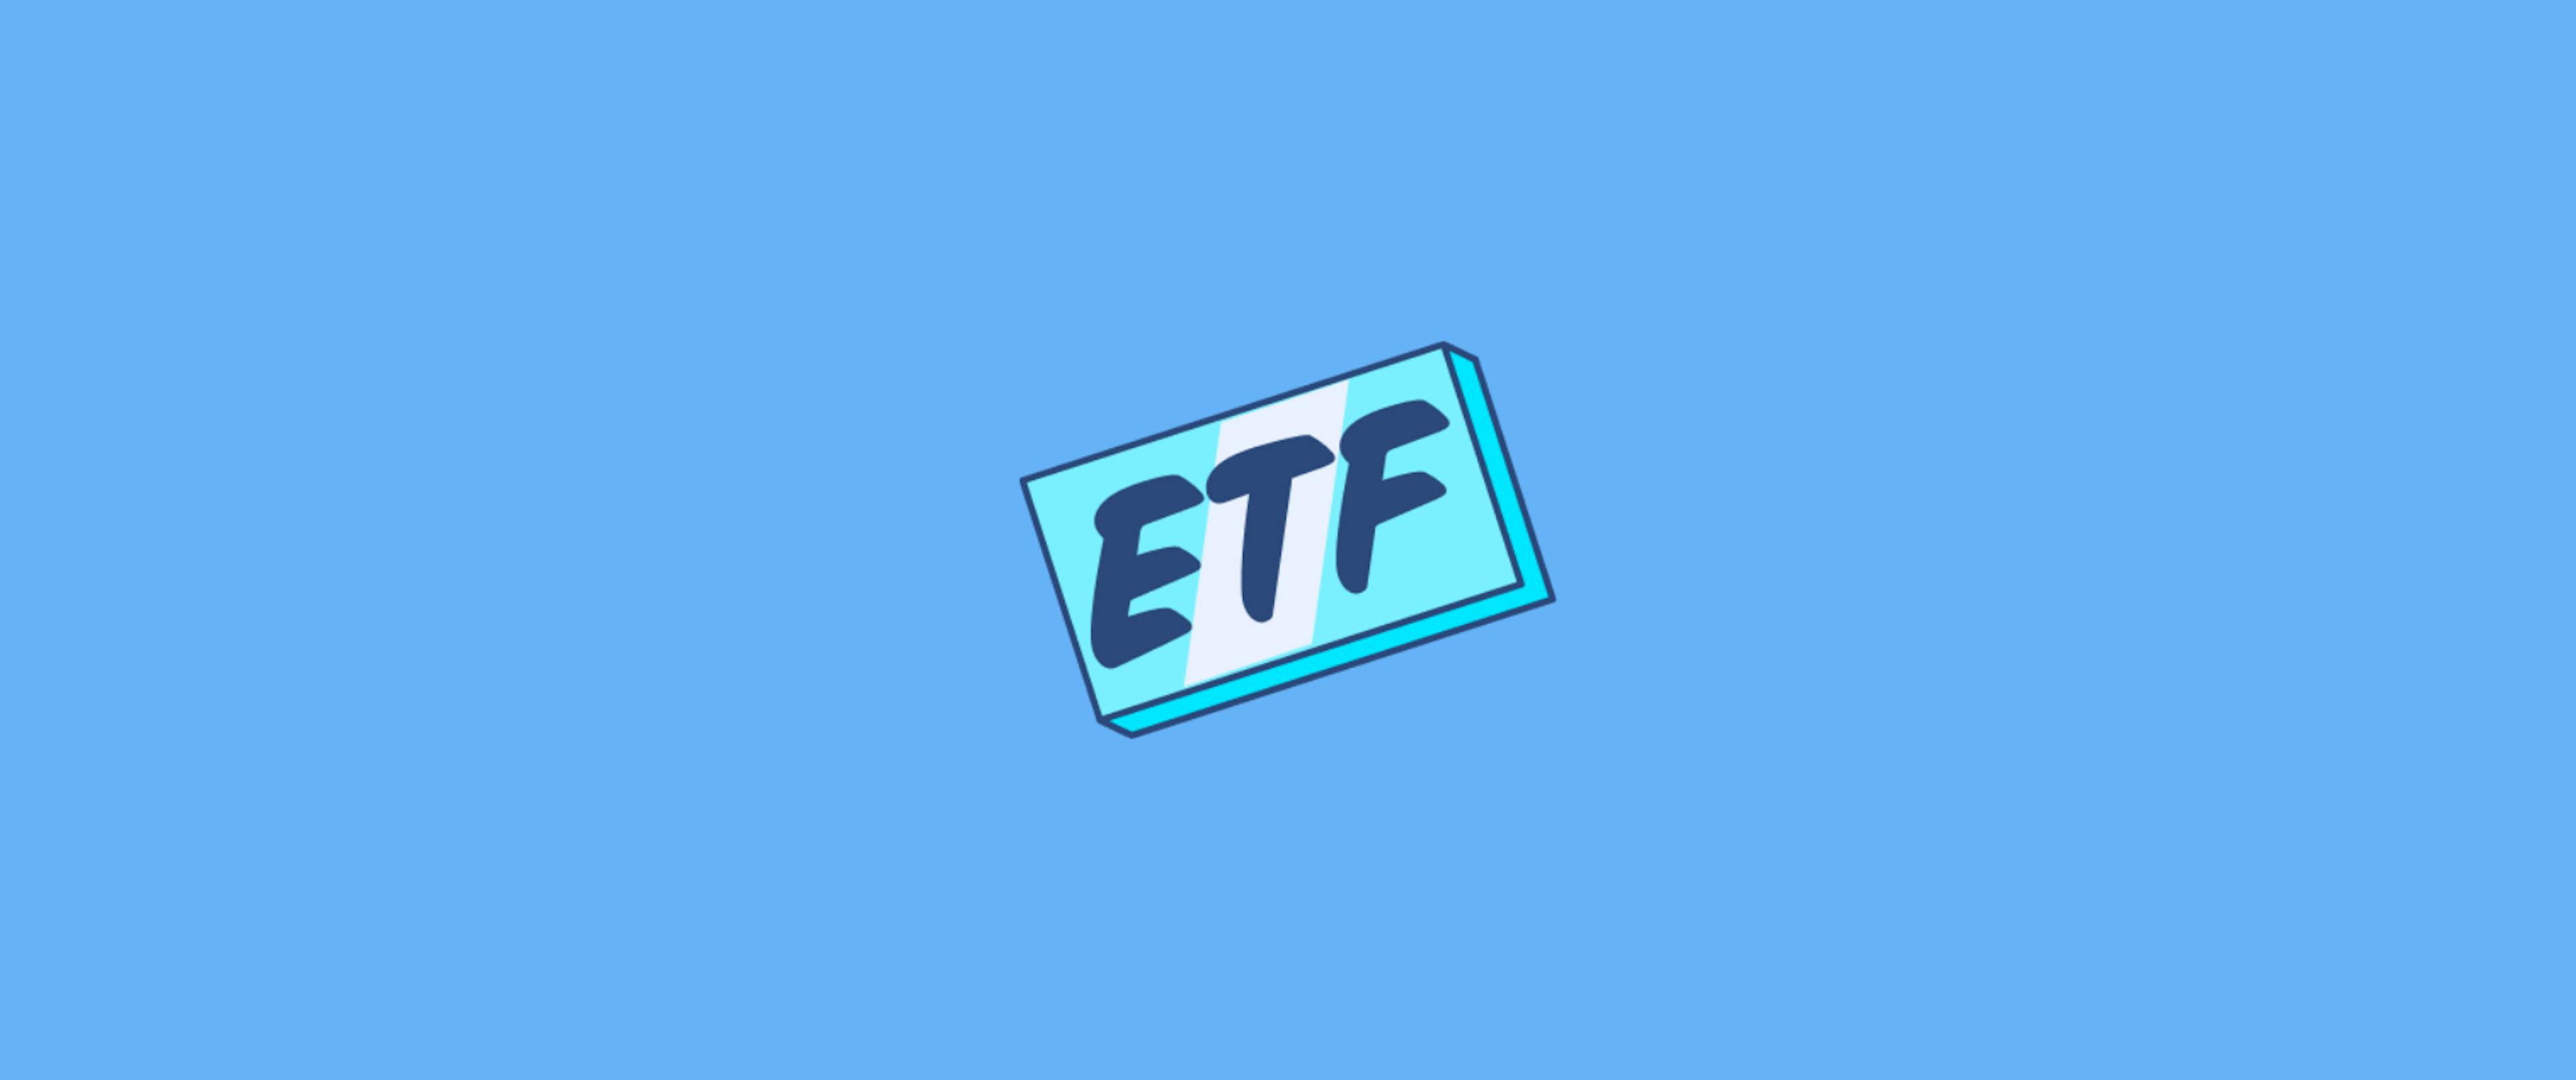 Ein leuchtendes ETF-Symbol schwebt auf einem hellblauen Hintergrund, symbolisch für die einfache und zugängliche Investition in börsengehandelte Fonds.